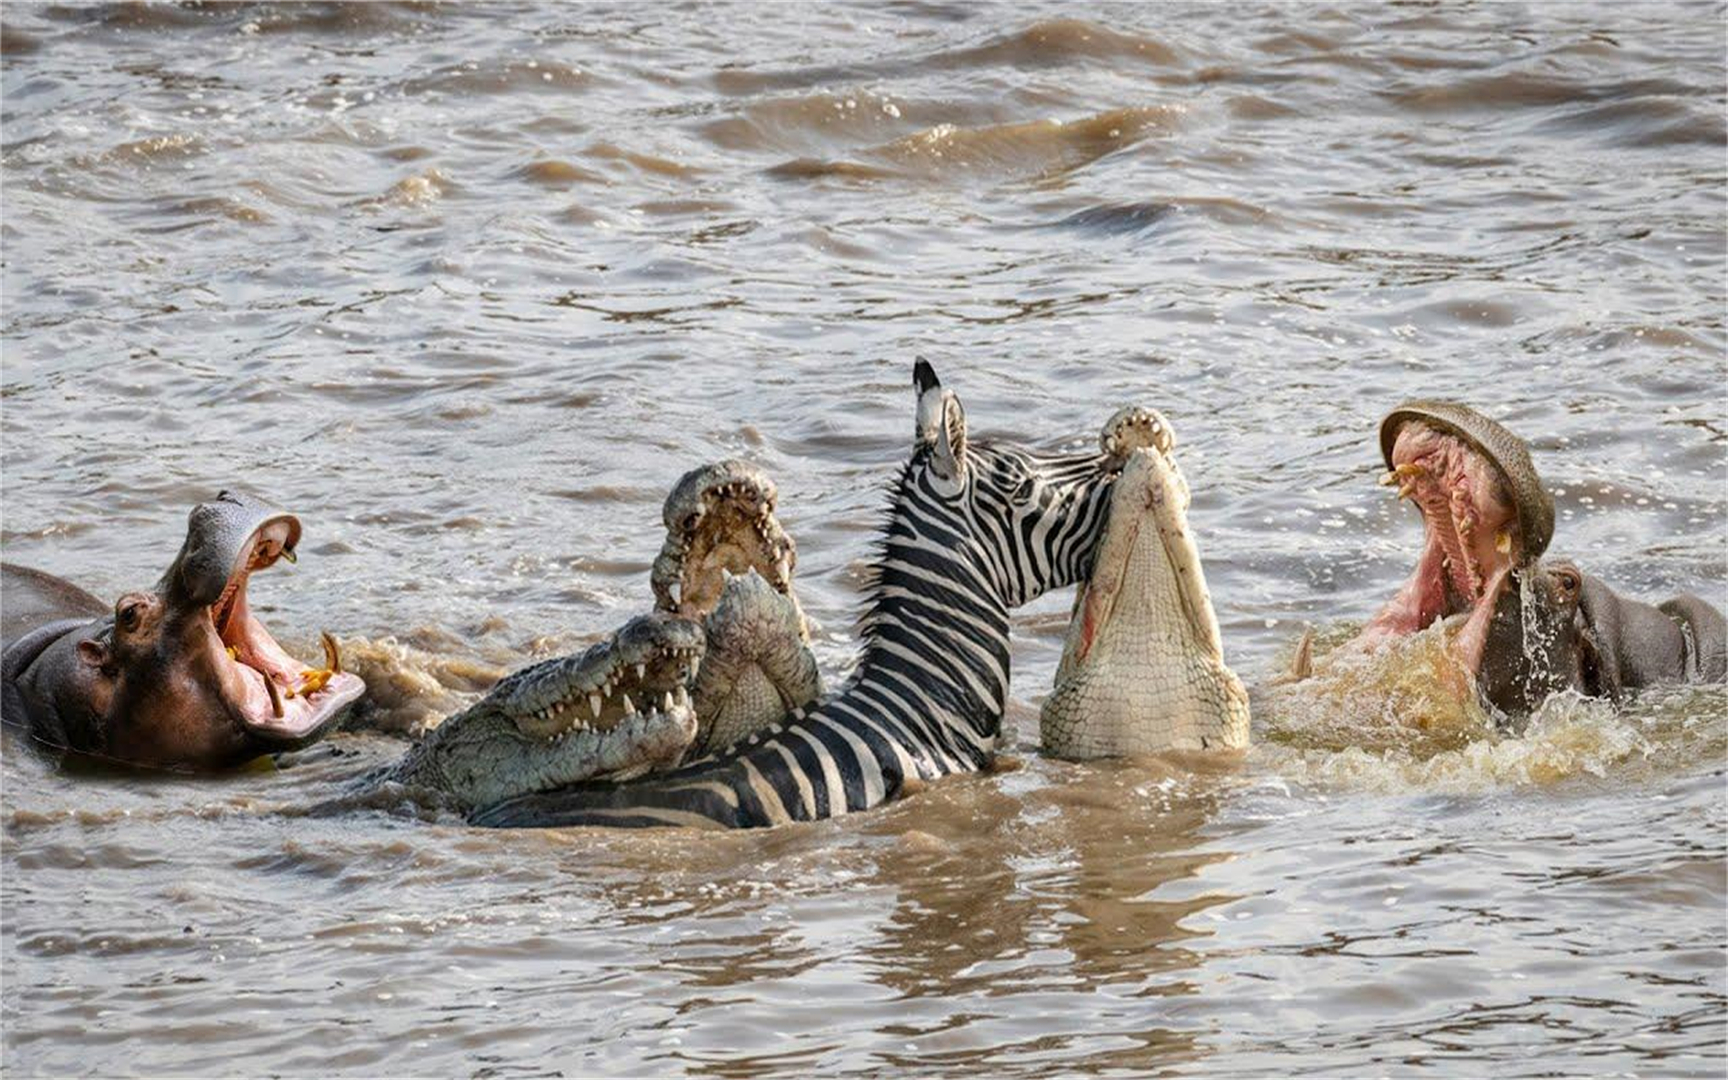 河马攻击鳄鱼以营救斑马,它为什么会这么做,神奇的大自然!